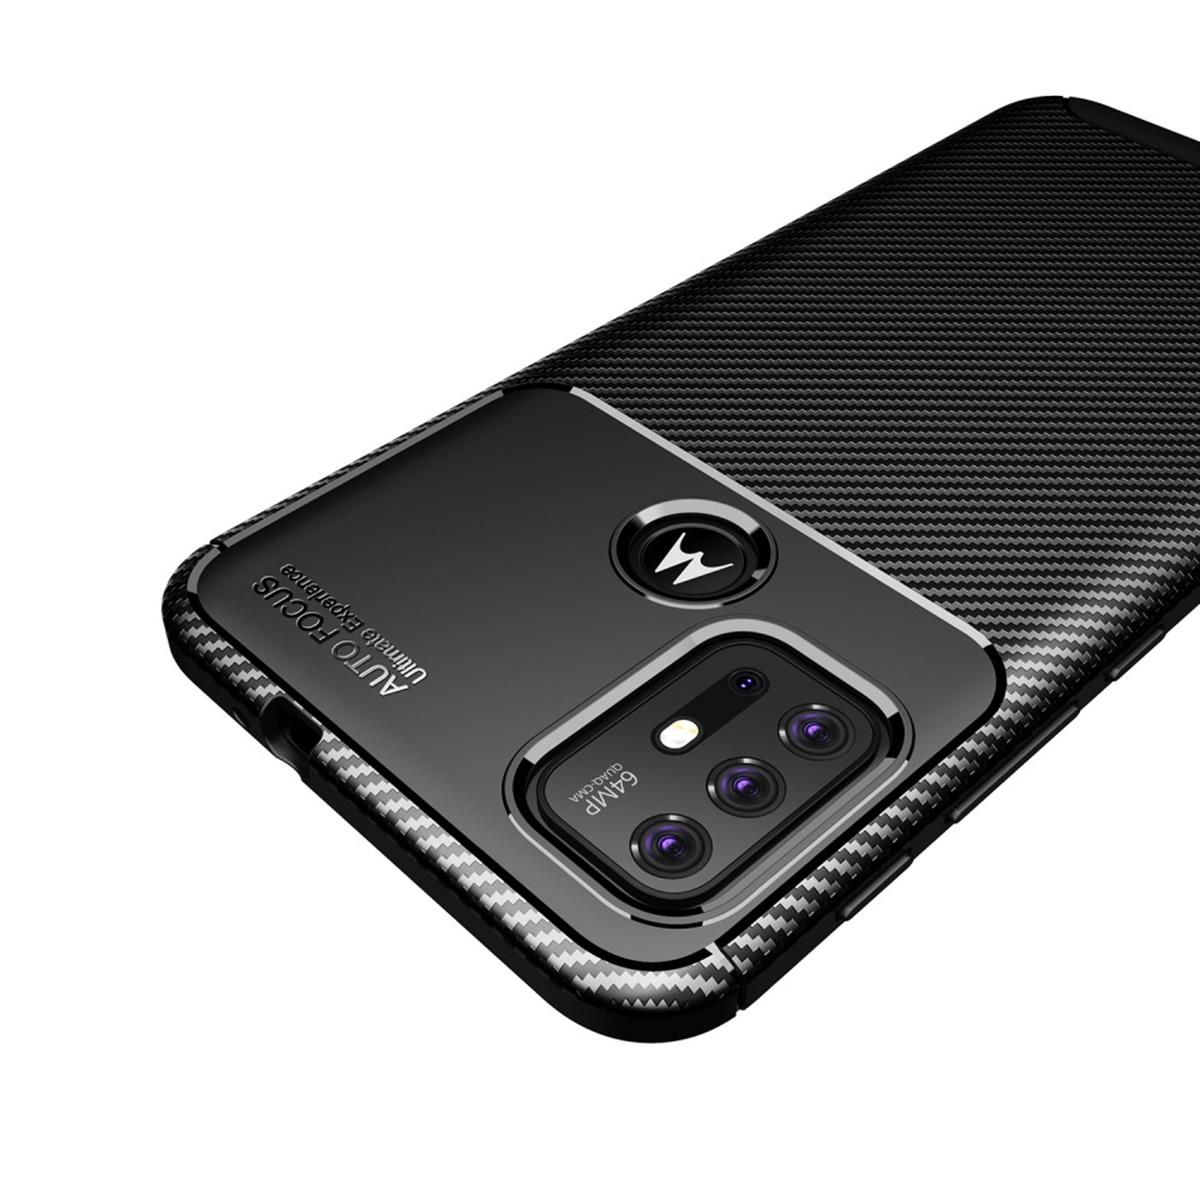 COVERKINGZ Handycase im Carbon Look, Moto G30, schwarz Motorola, Backcover